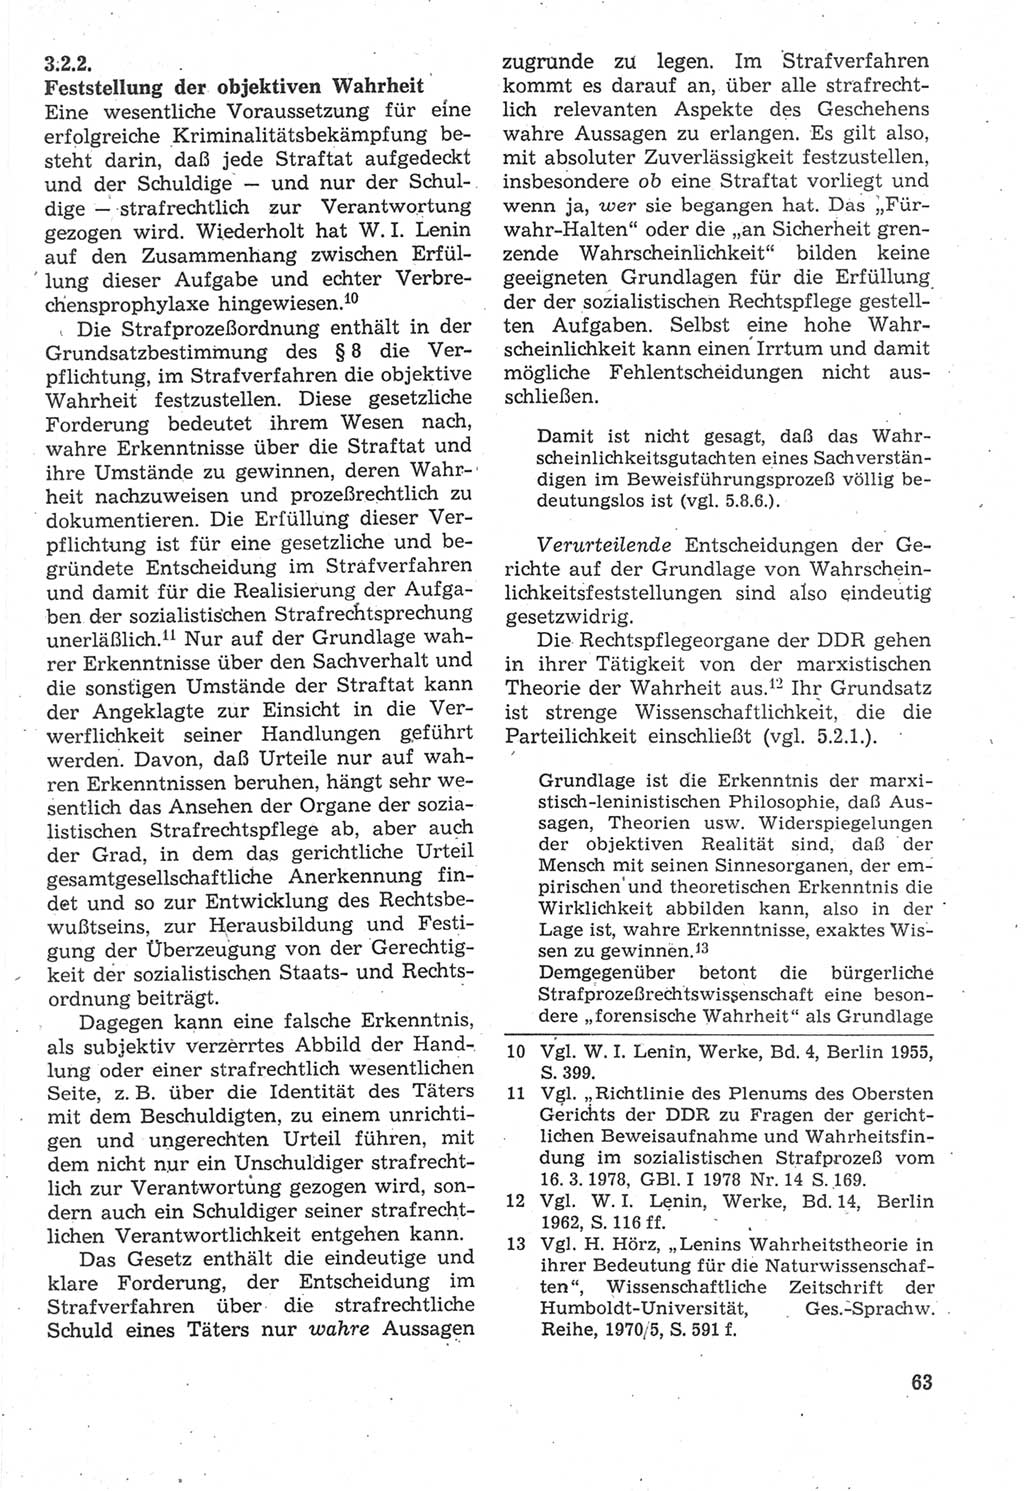 Strafverfahrensrecht [Deutsche Demokratische Republik (DDR)], Lehrbuch 1987, Seite 63 (Strafverf.-R. DDR Lb. 1987, S. 63)